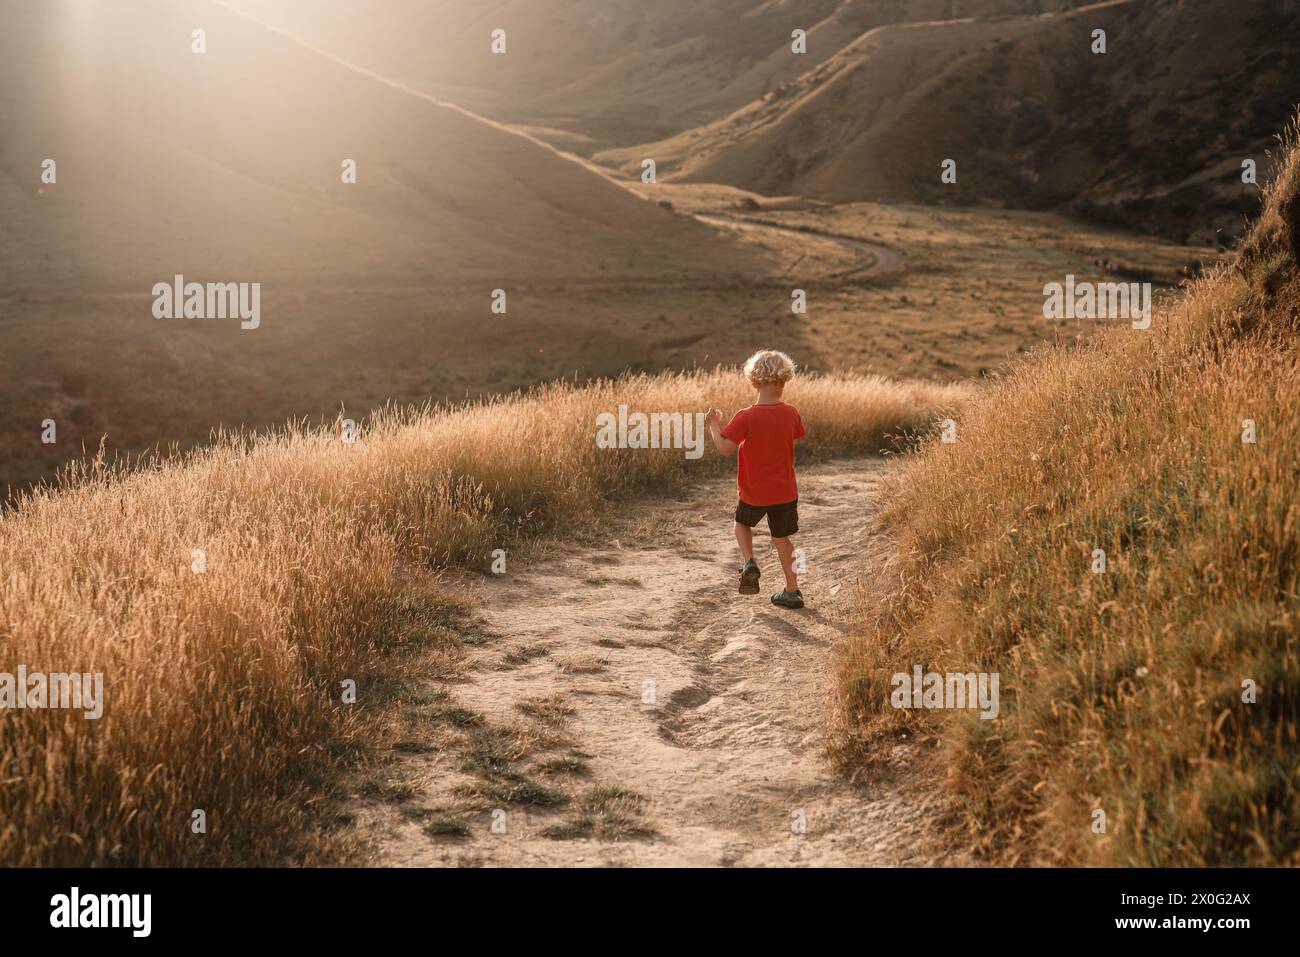 Jeune garçon sautant le chemin à travers des collines avec de l'herbe dorée Banque D'Images